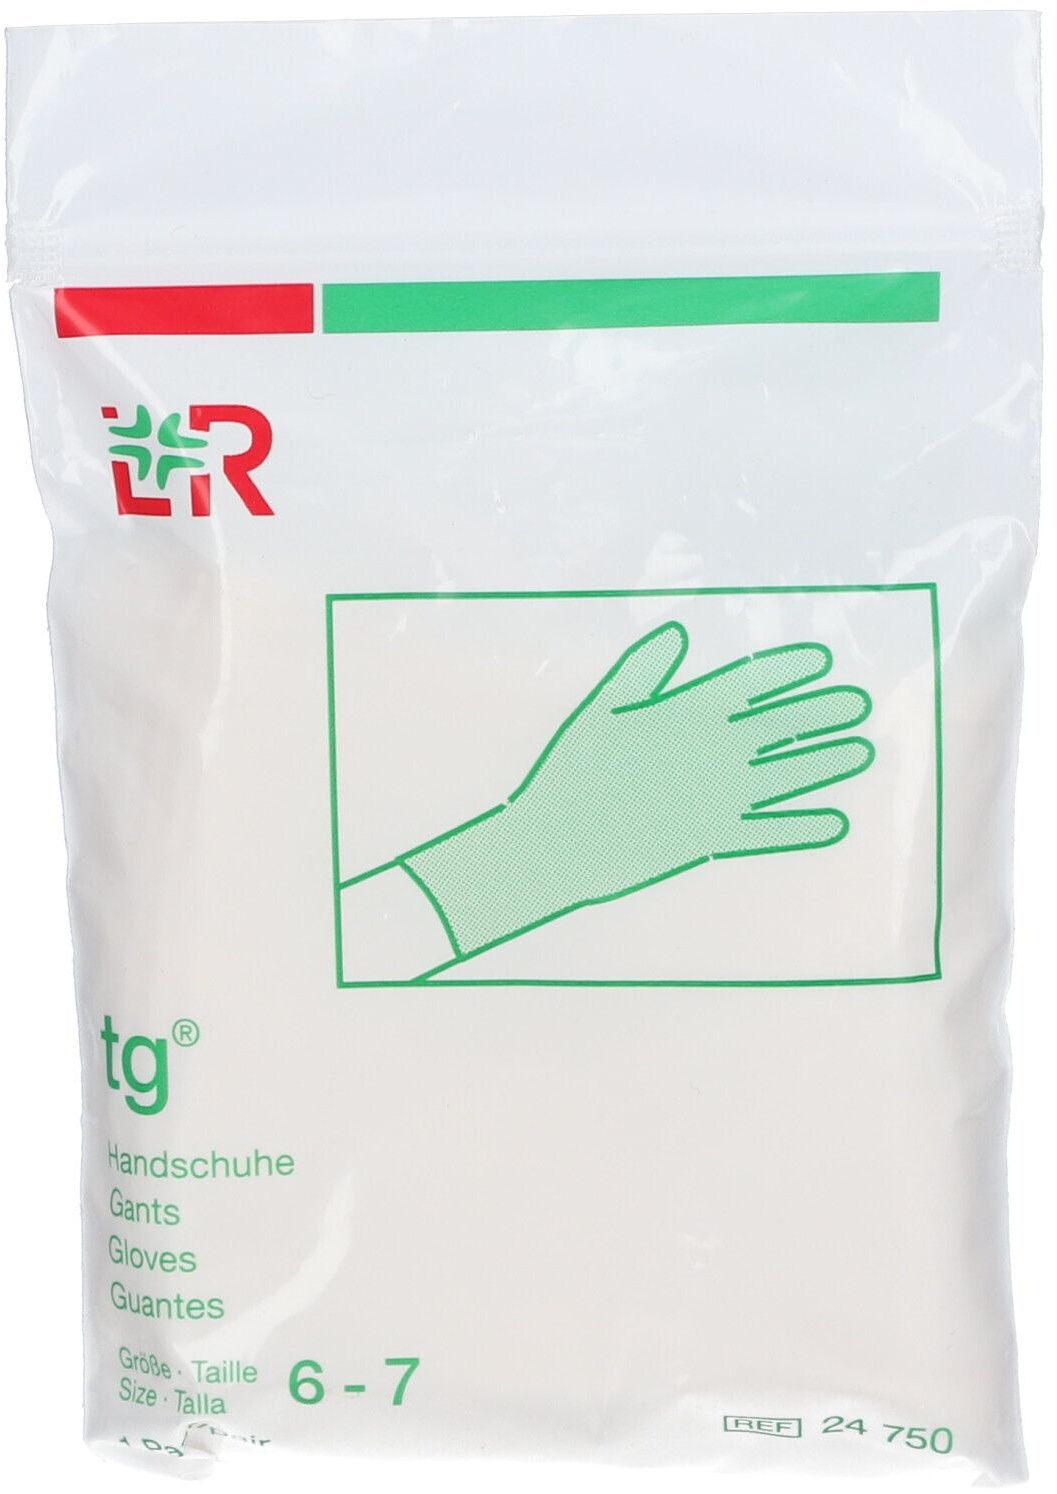 Lohmann & Rauscher Tg® Gants Taille 6-7 2 pc(s) gant(s)